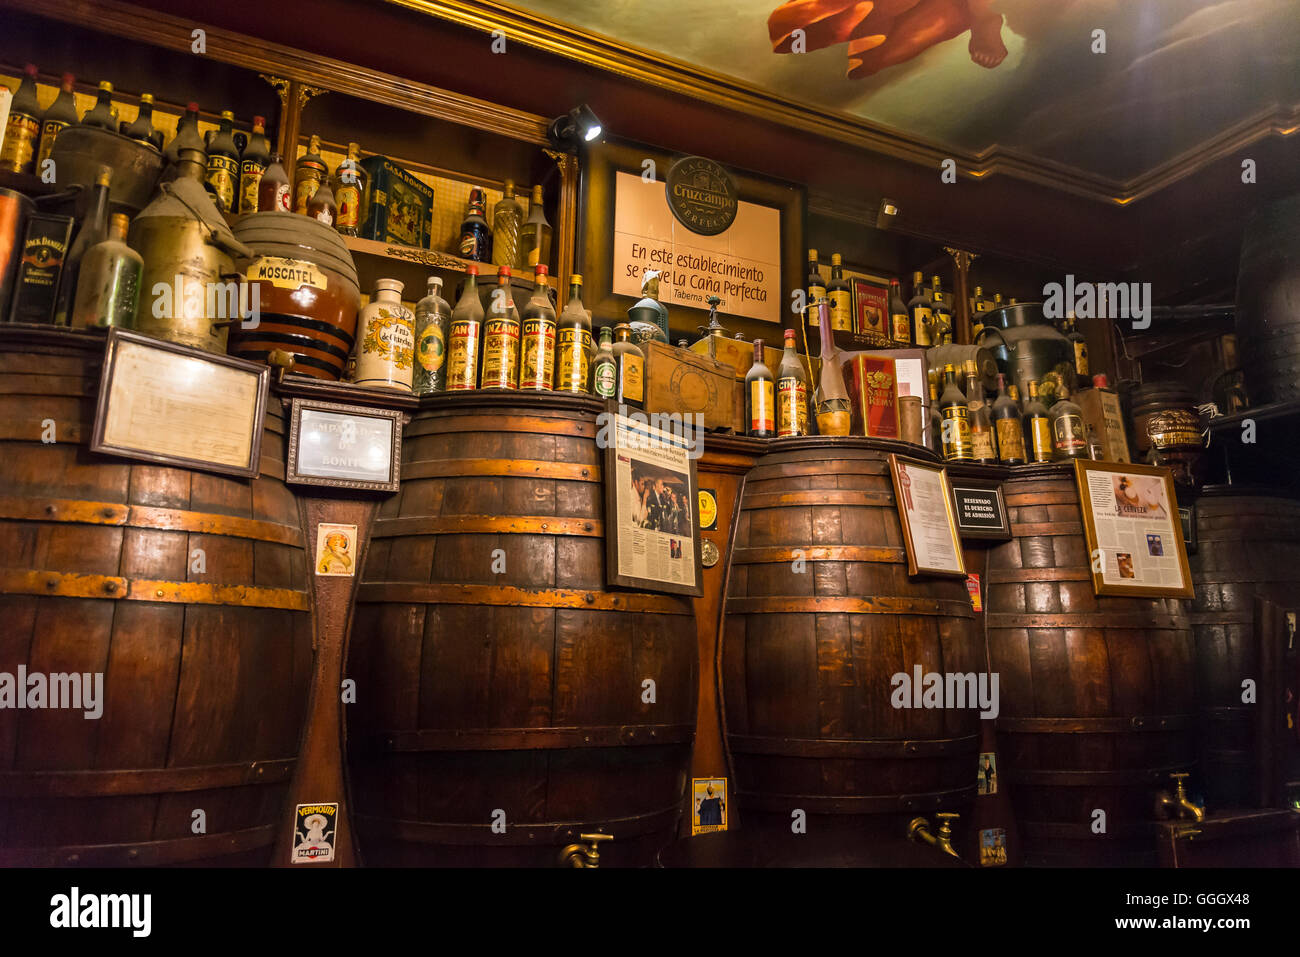 Bierfässer in traditionellen Taverne Engel Sierra, Chueca Platz, Madrid, Spanien Stockfoto